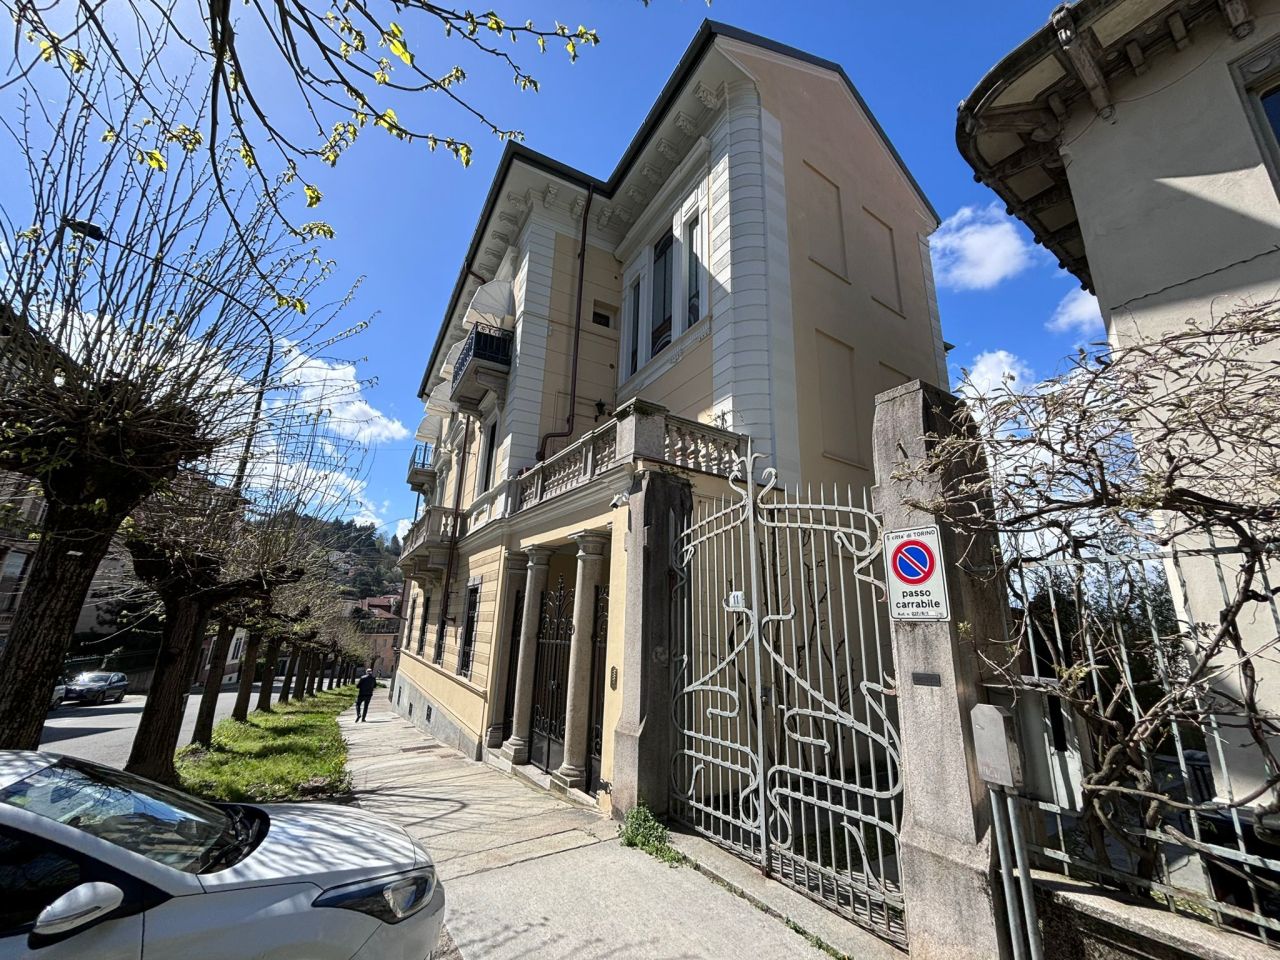 Ufficio / Studio in affitto a Torino, 9 locali, prezzo € 1.800 | PortaleAgenzieImmobiliari.it